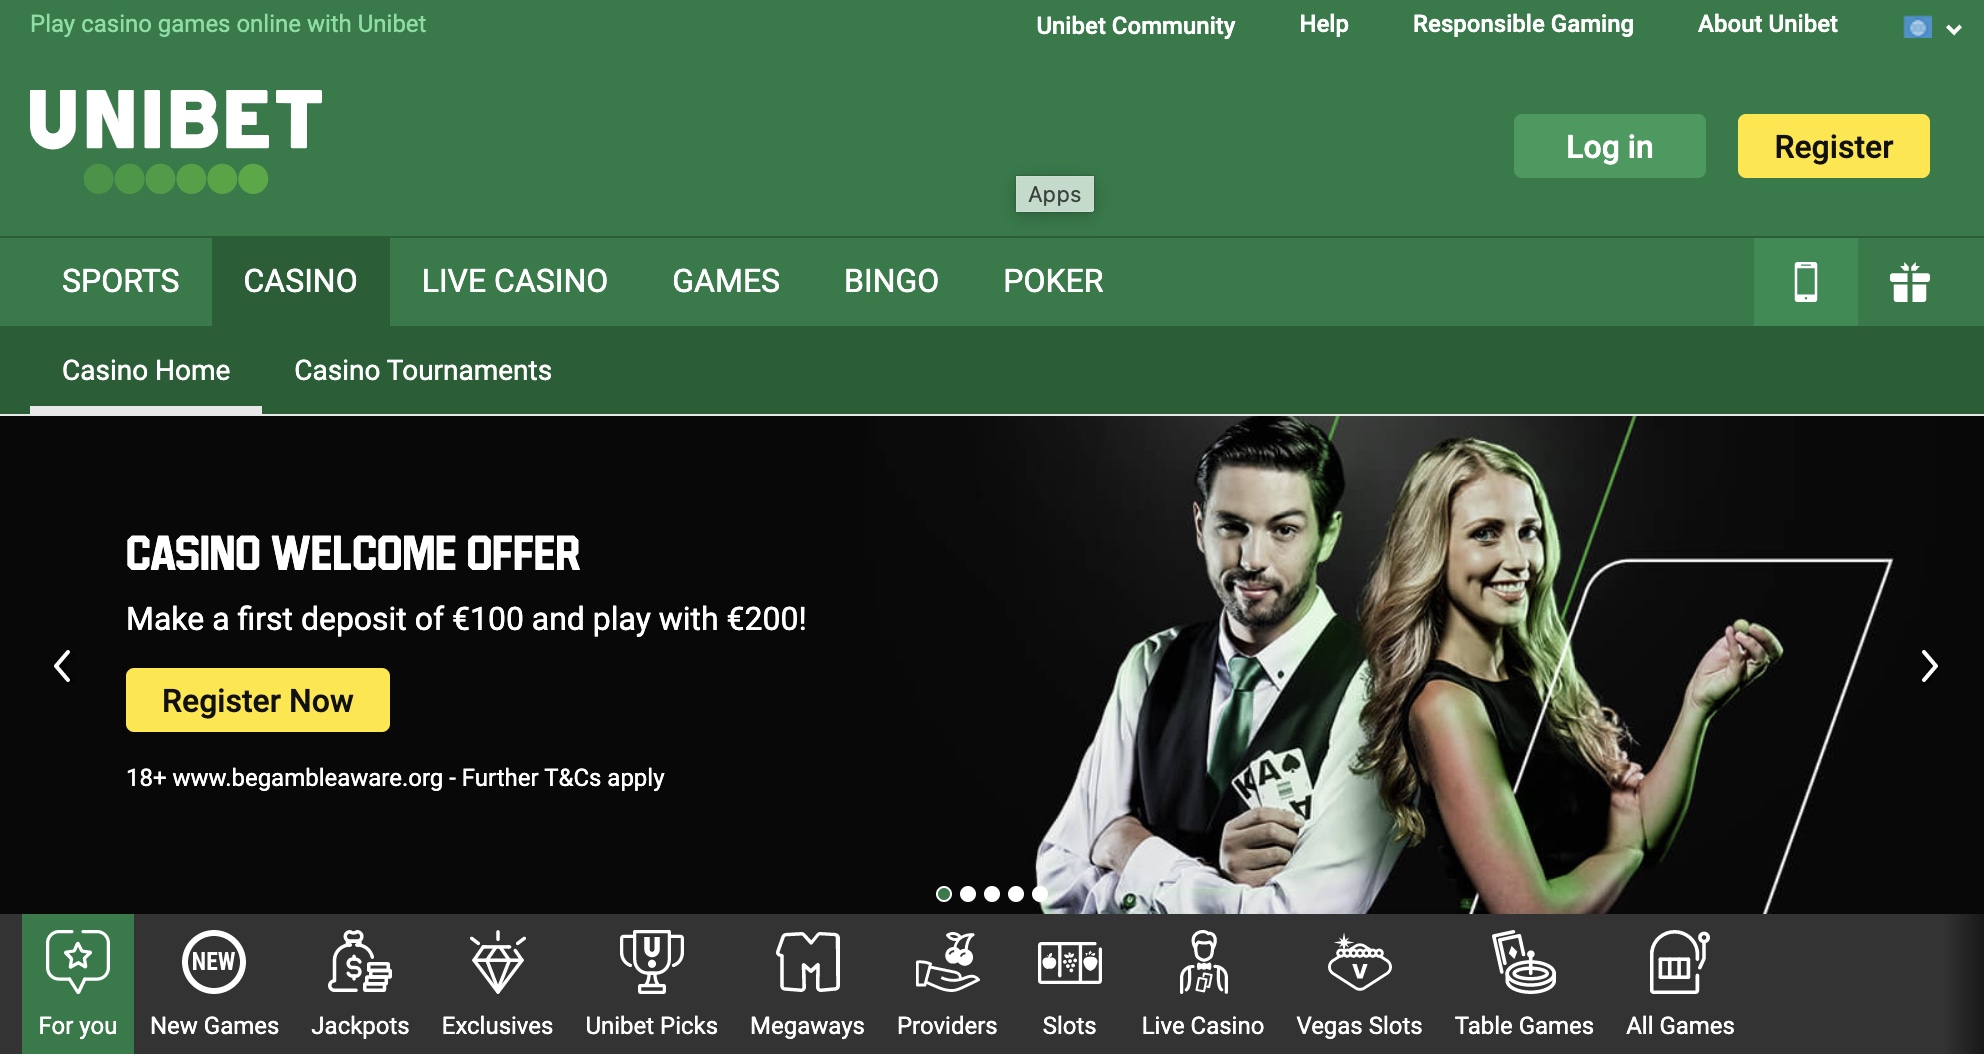 Revue du site Unibet Casino en ligne